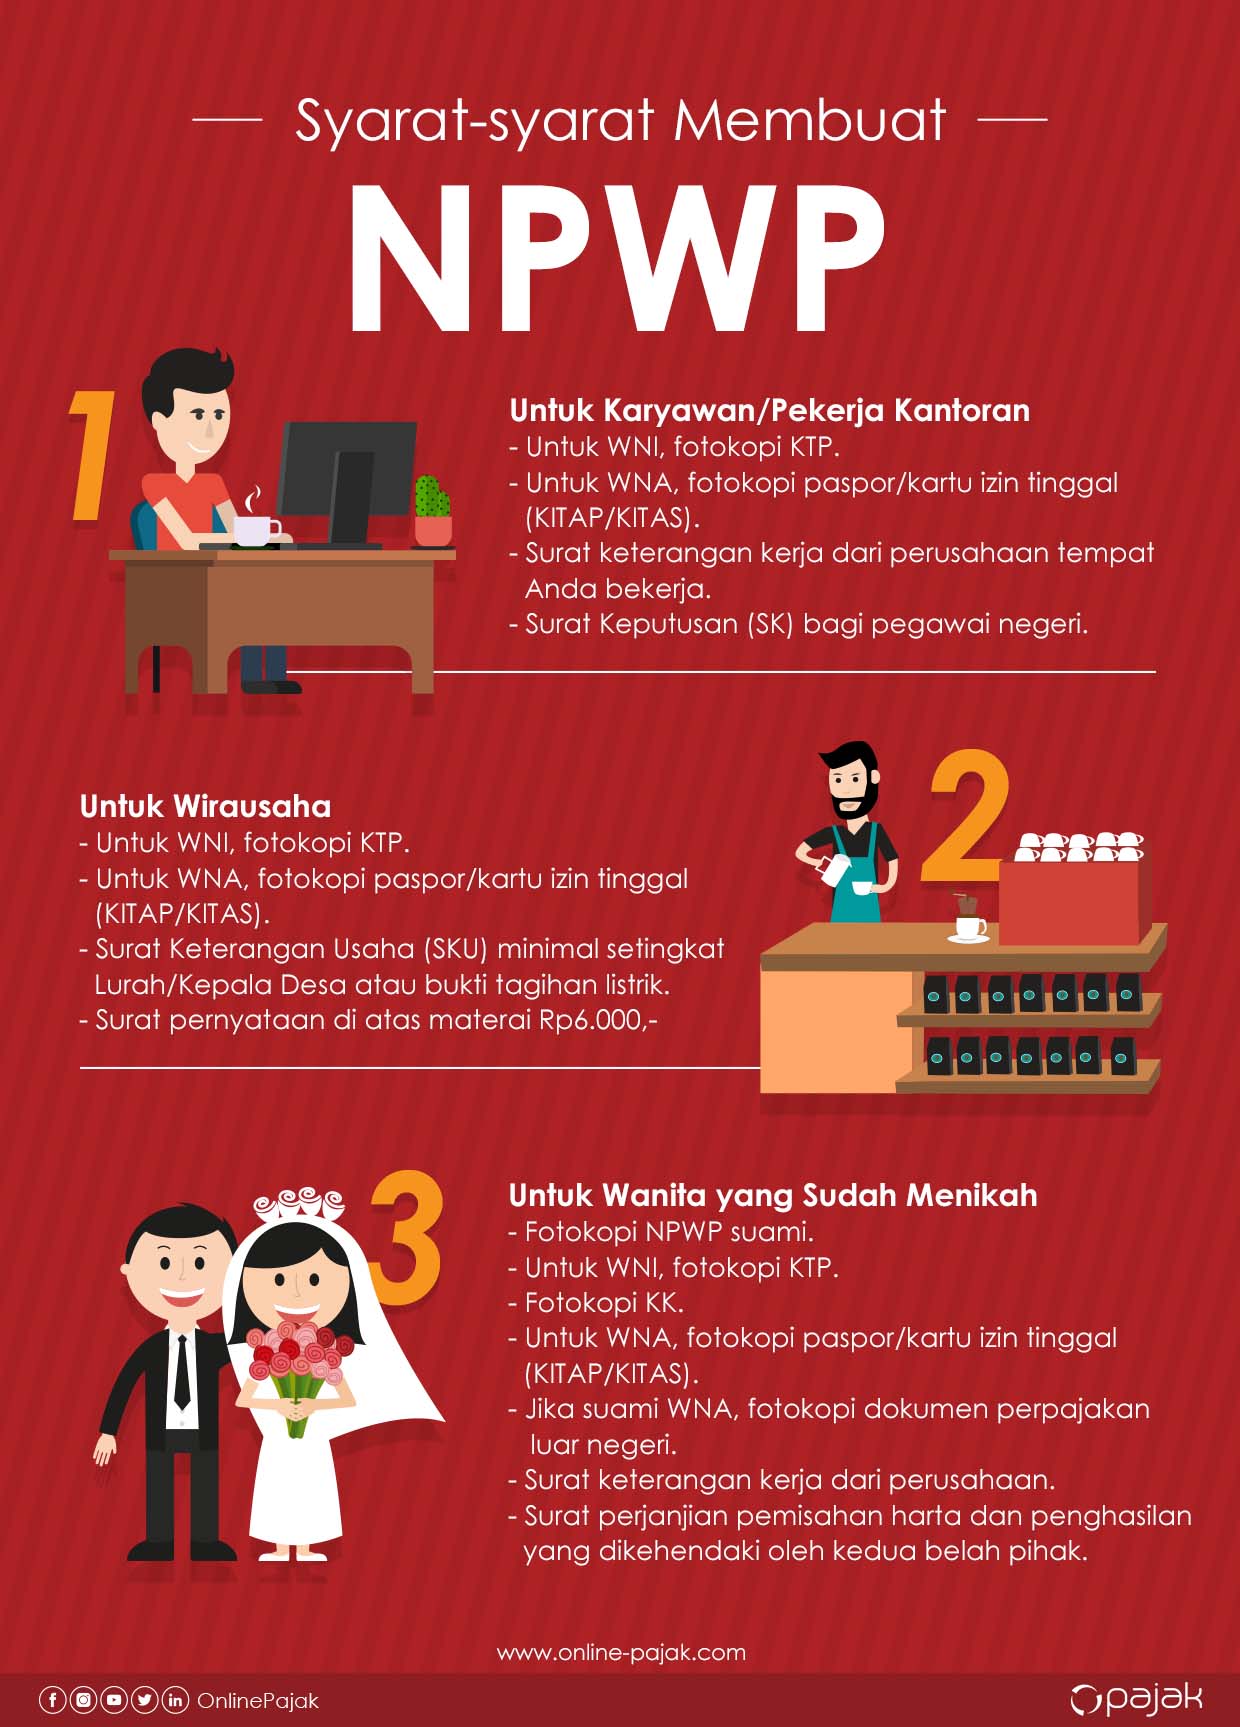 Bagaimana cara daftar NPWP online di tahun 2019? Simak 3 langkah MUDAH cara membuat NPWP secara Online beserta semua syaratnya di artikel ini!